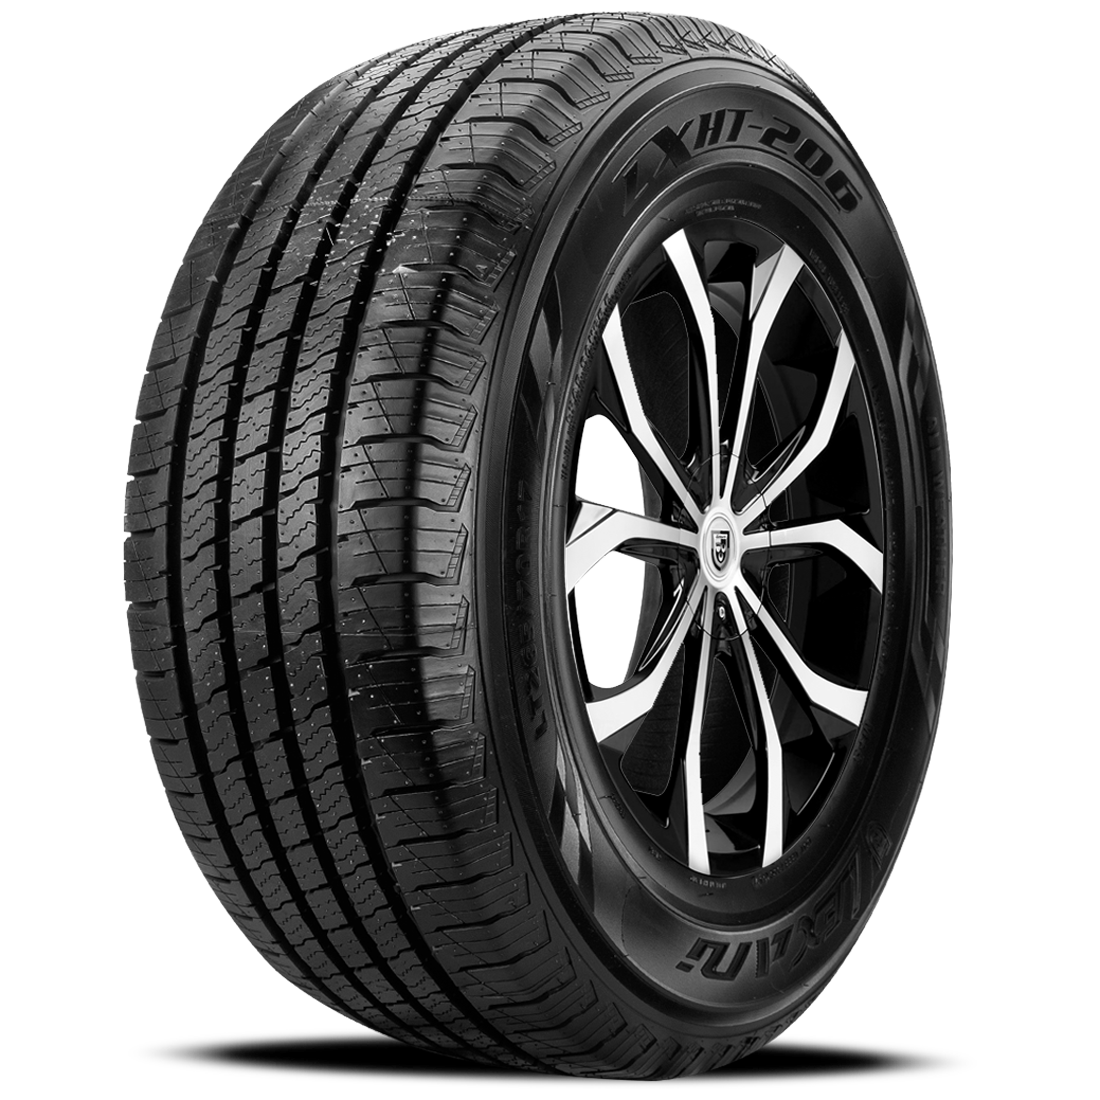 LEXANI LXHT-206 P235/65R17 (29.1X9.3R 17) Tires